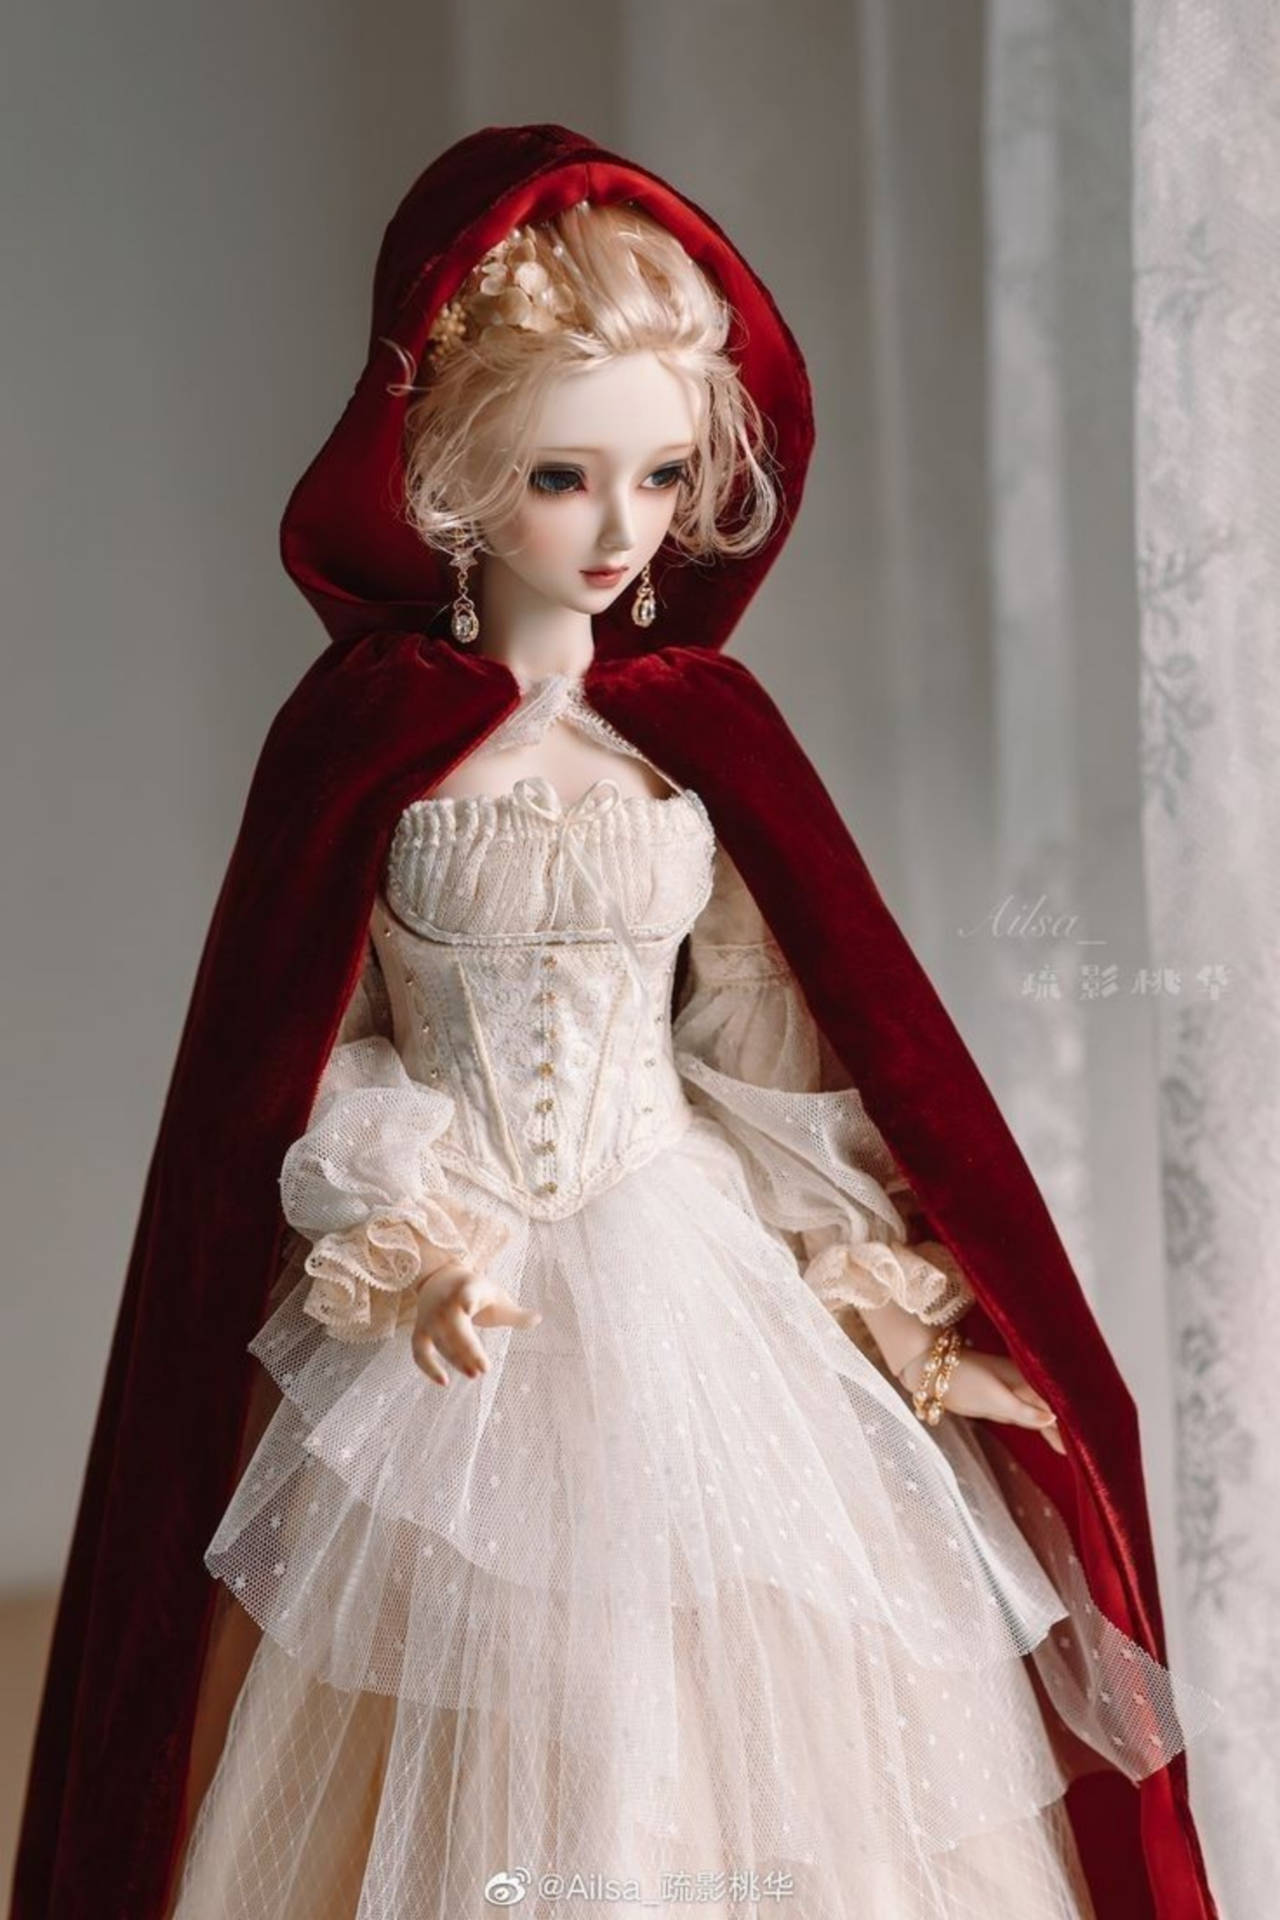 Barbie Doll In Velvet Cloak Background